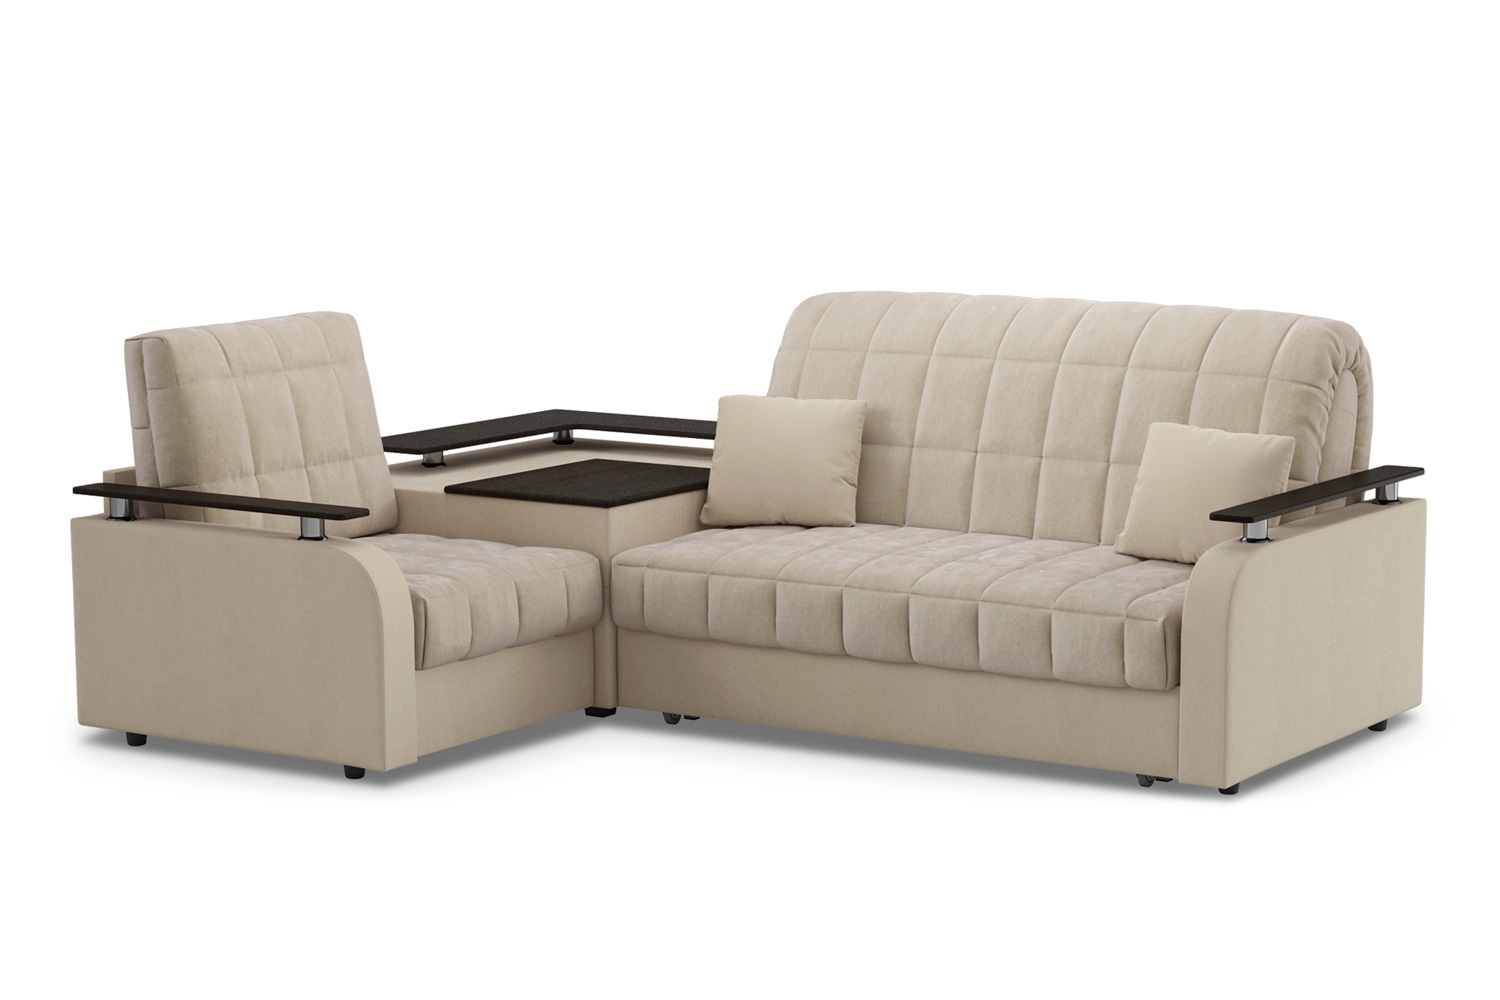 Купить Угловой диван Карина с левым углом с доставкой по выгодной цене винтернет магазине Hoff.ru. Характеристики, фото и отзывы.